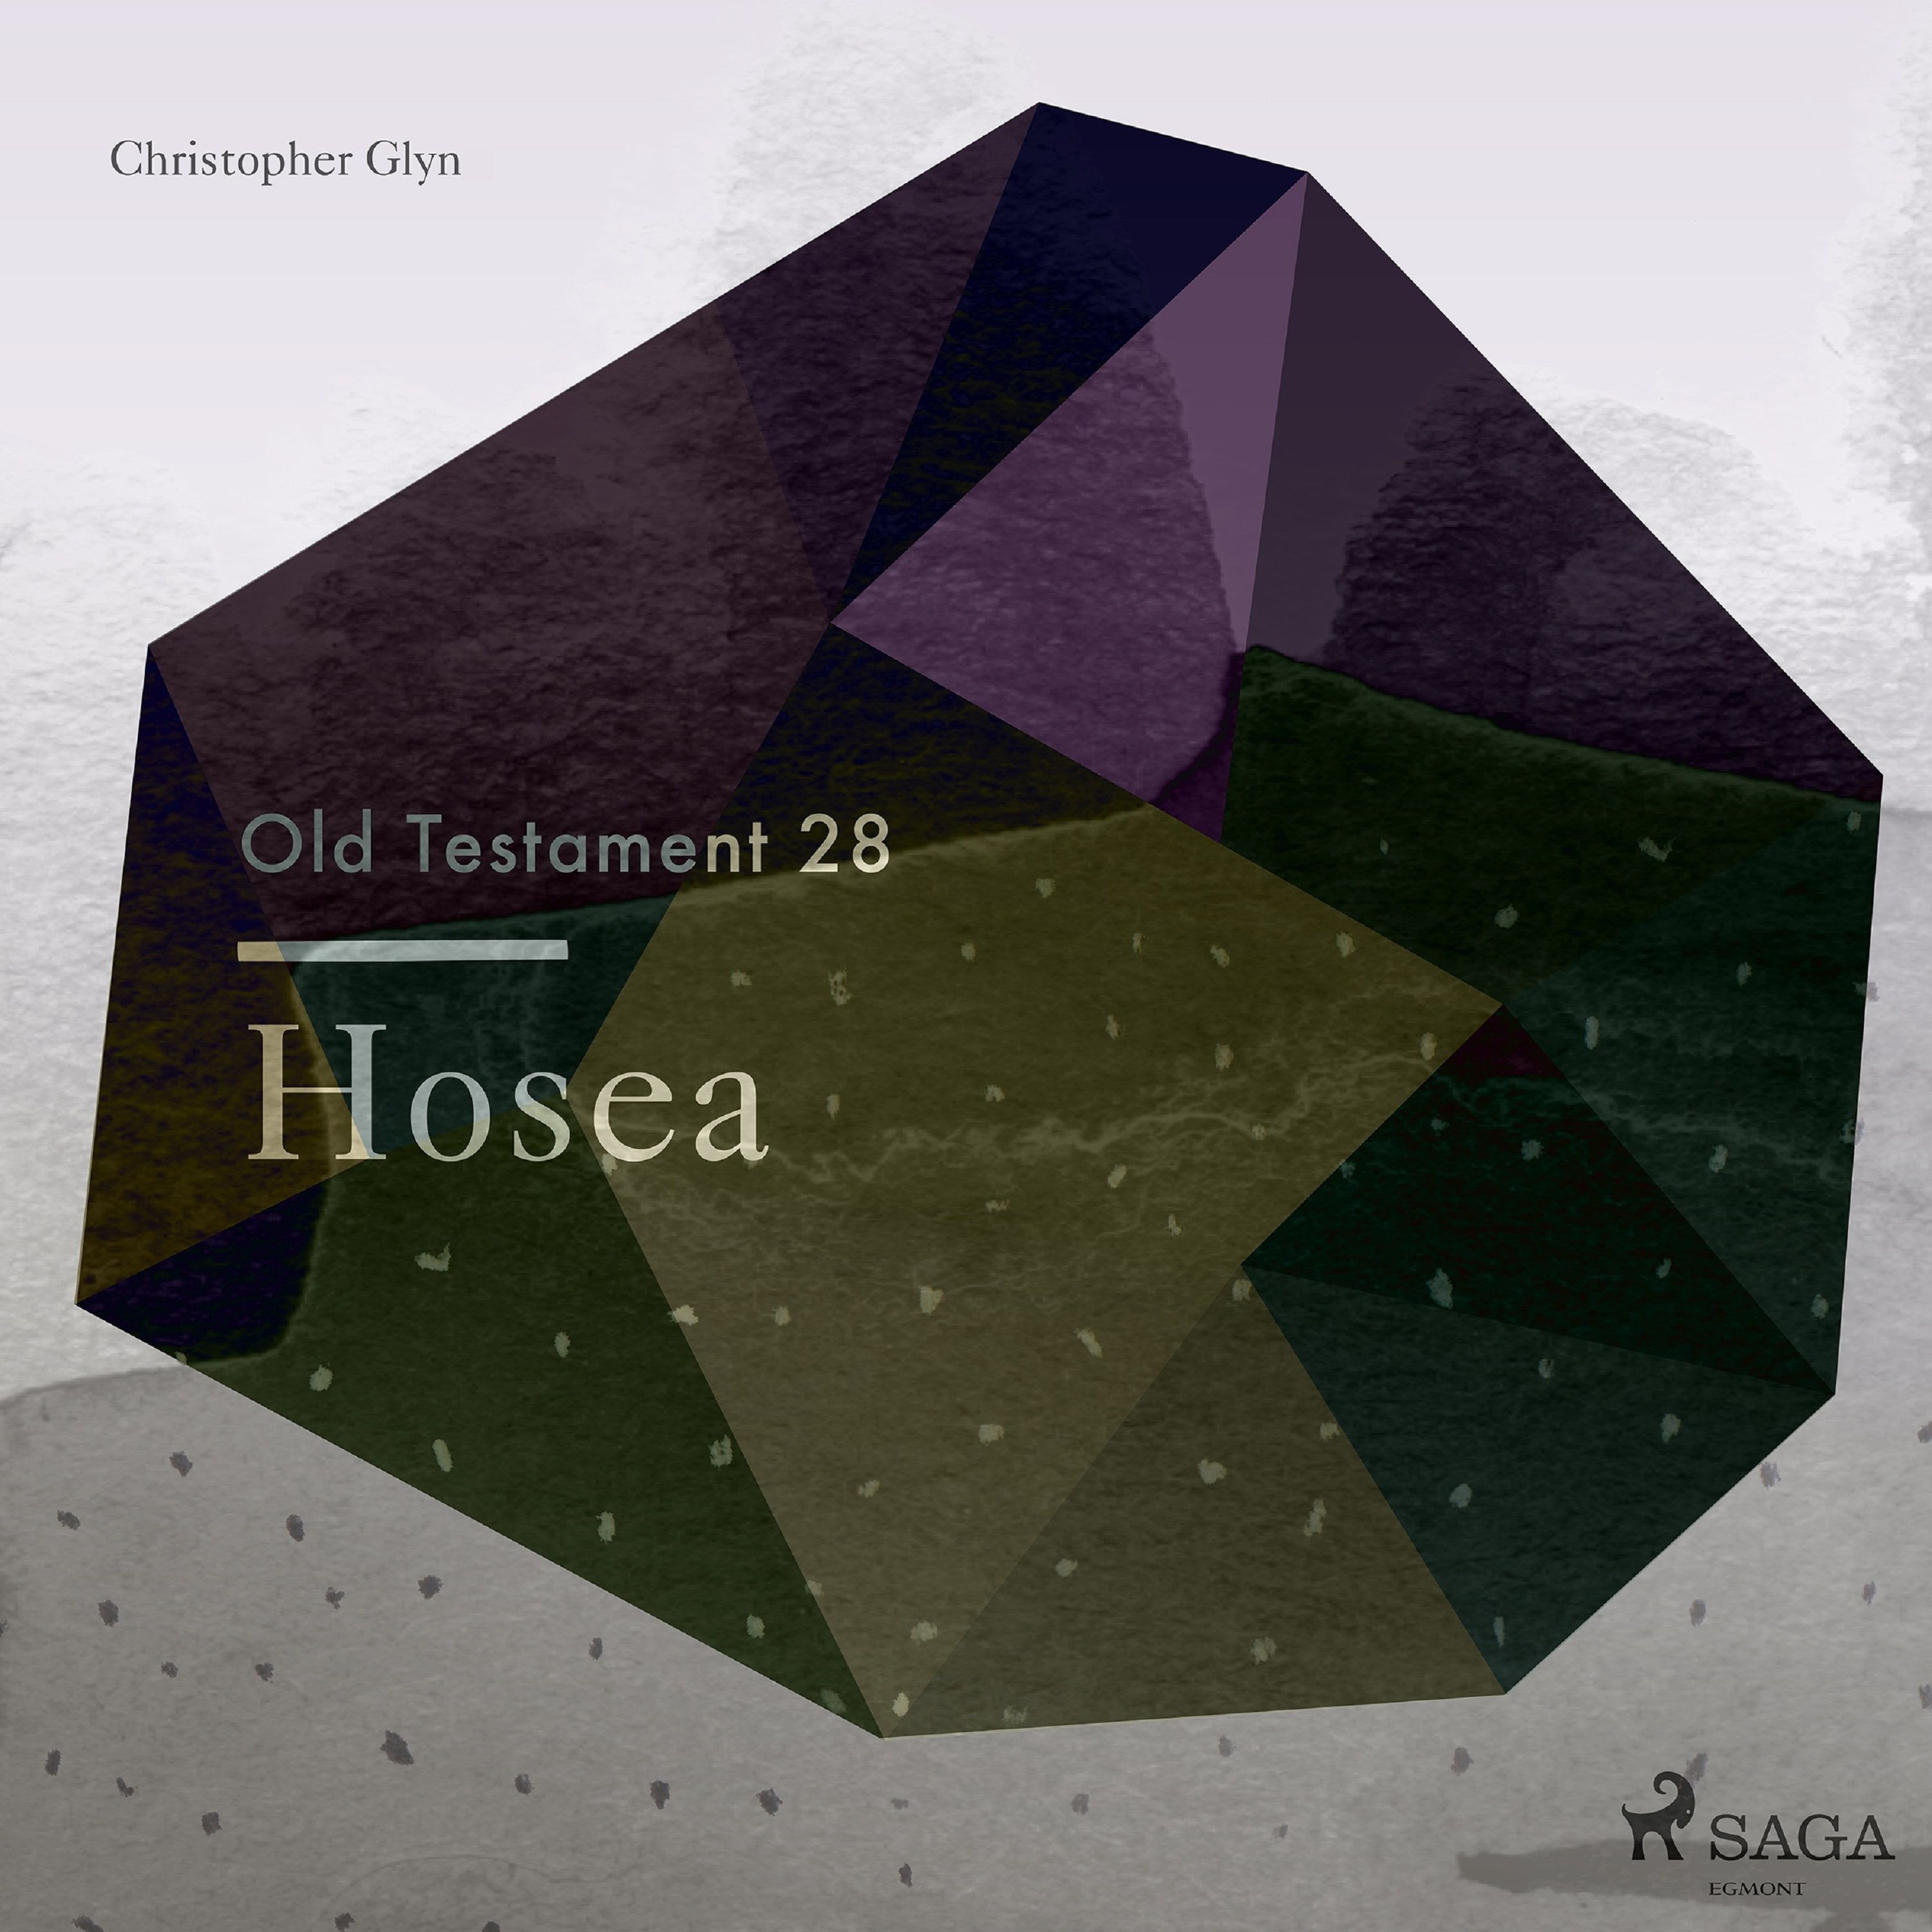 The Old Testament 28 - Hosea, ljudbok av Christopher Glyn